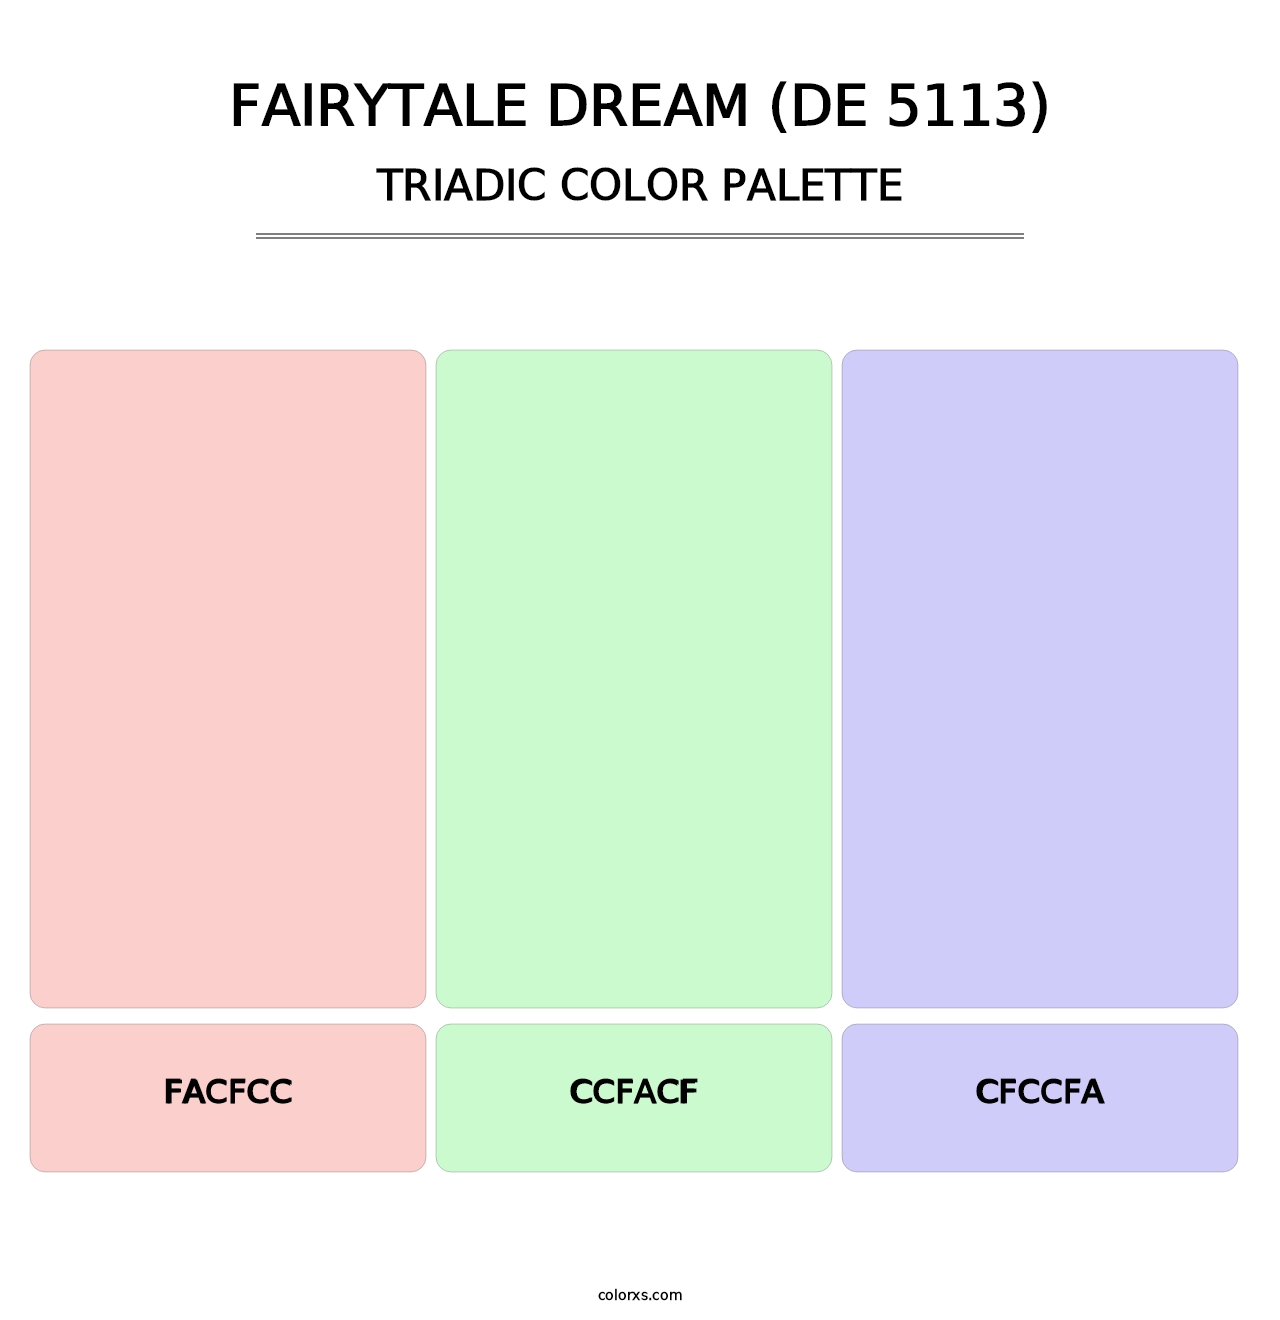 Fairytale Dream (DE 5113) - Triadic Color Palette